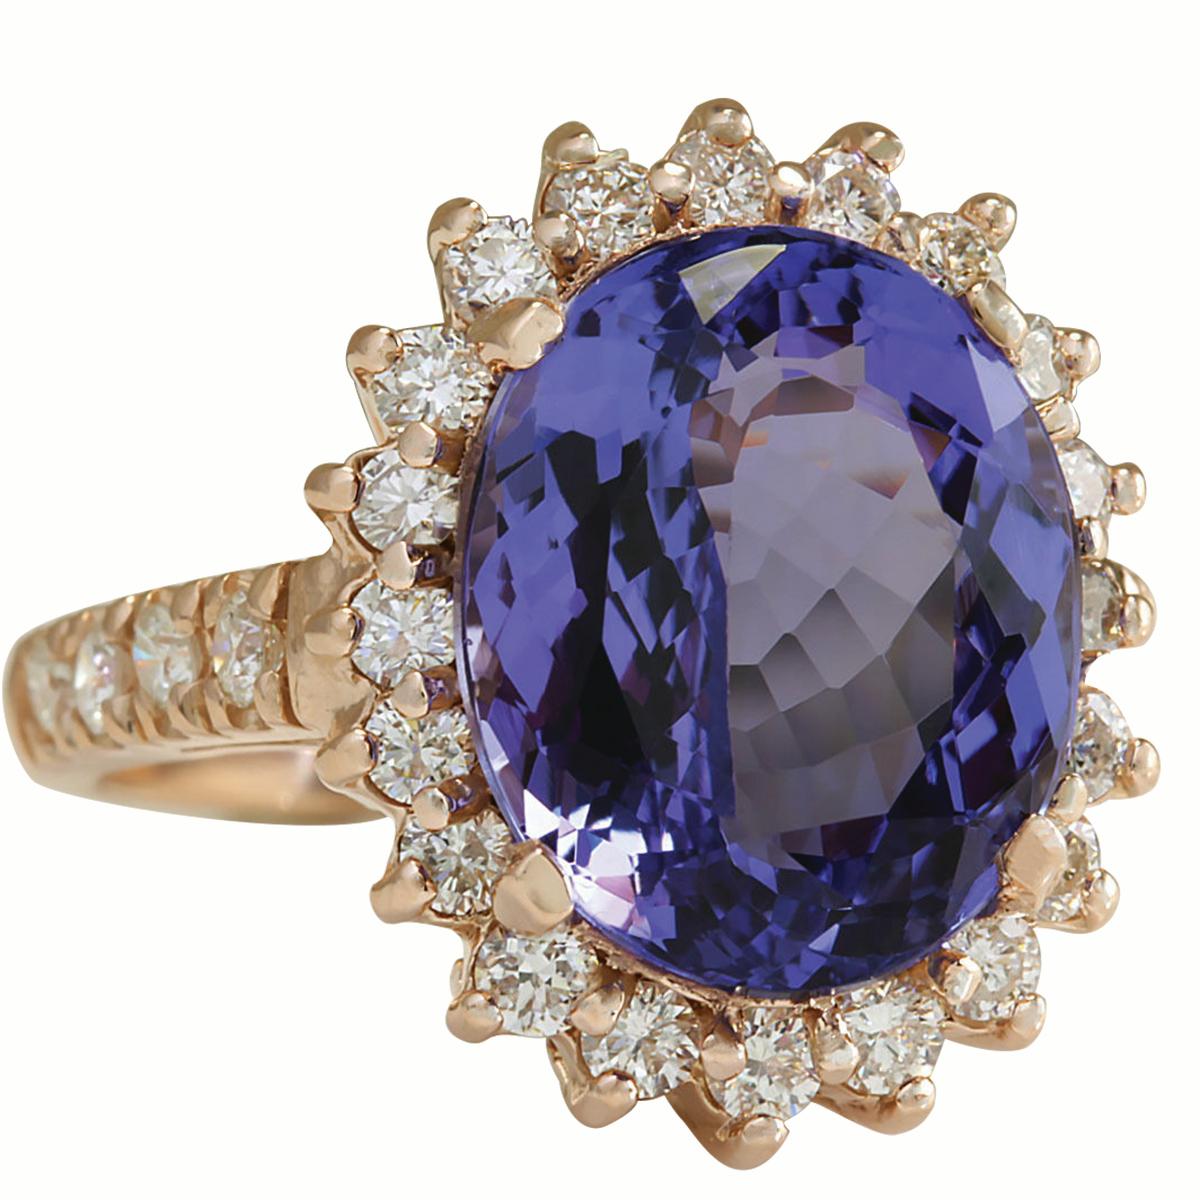 8.44 Carat Tanzanite 14 Karat Rose Gold Diamond Ring
Stamped: 14K Rose Gold
Total Ring Weight: 6.2 Grams
Total  Tanzanite Weight is 7.44 Carat (Measures: 13.00x11.00 mm)
Color: Blue
Total  Diamond Weight is 1.00 Carat
Color: F-G, Clarity: